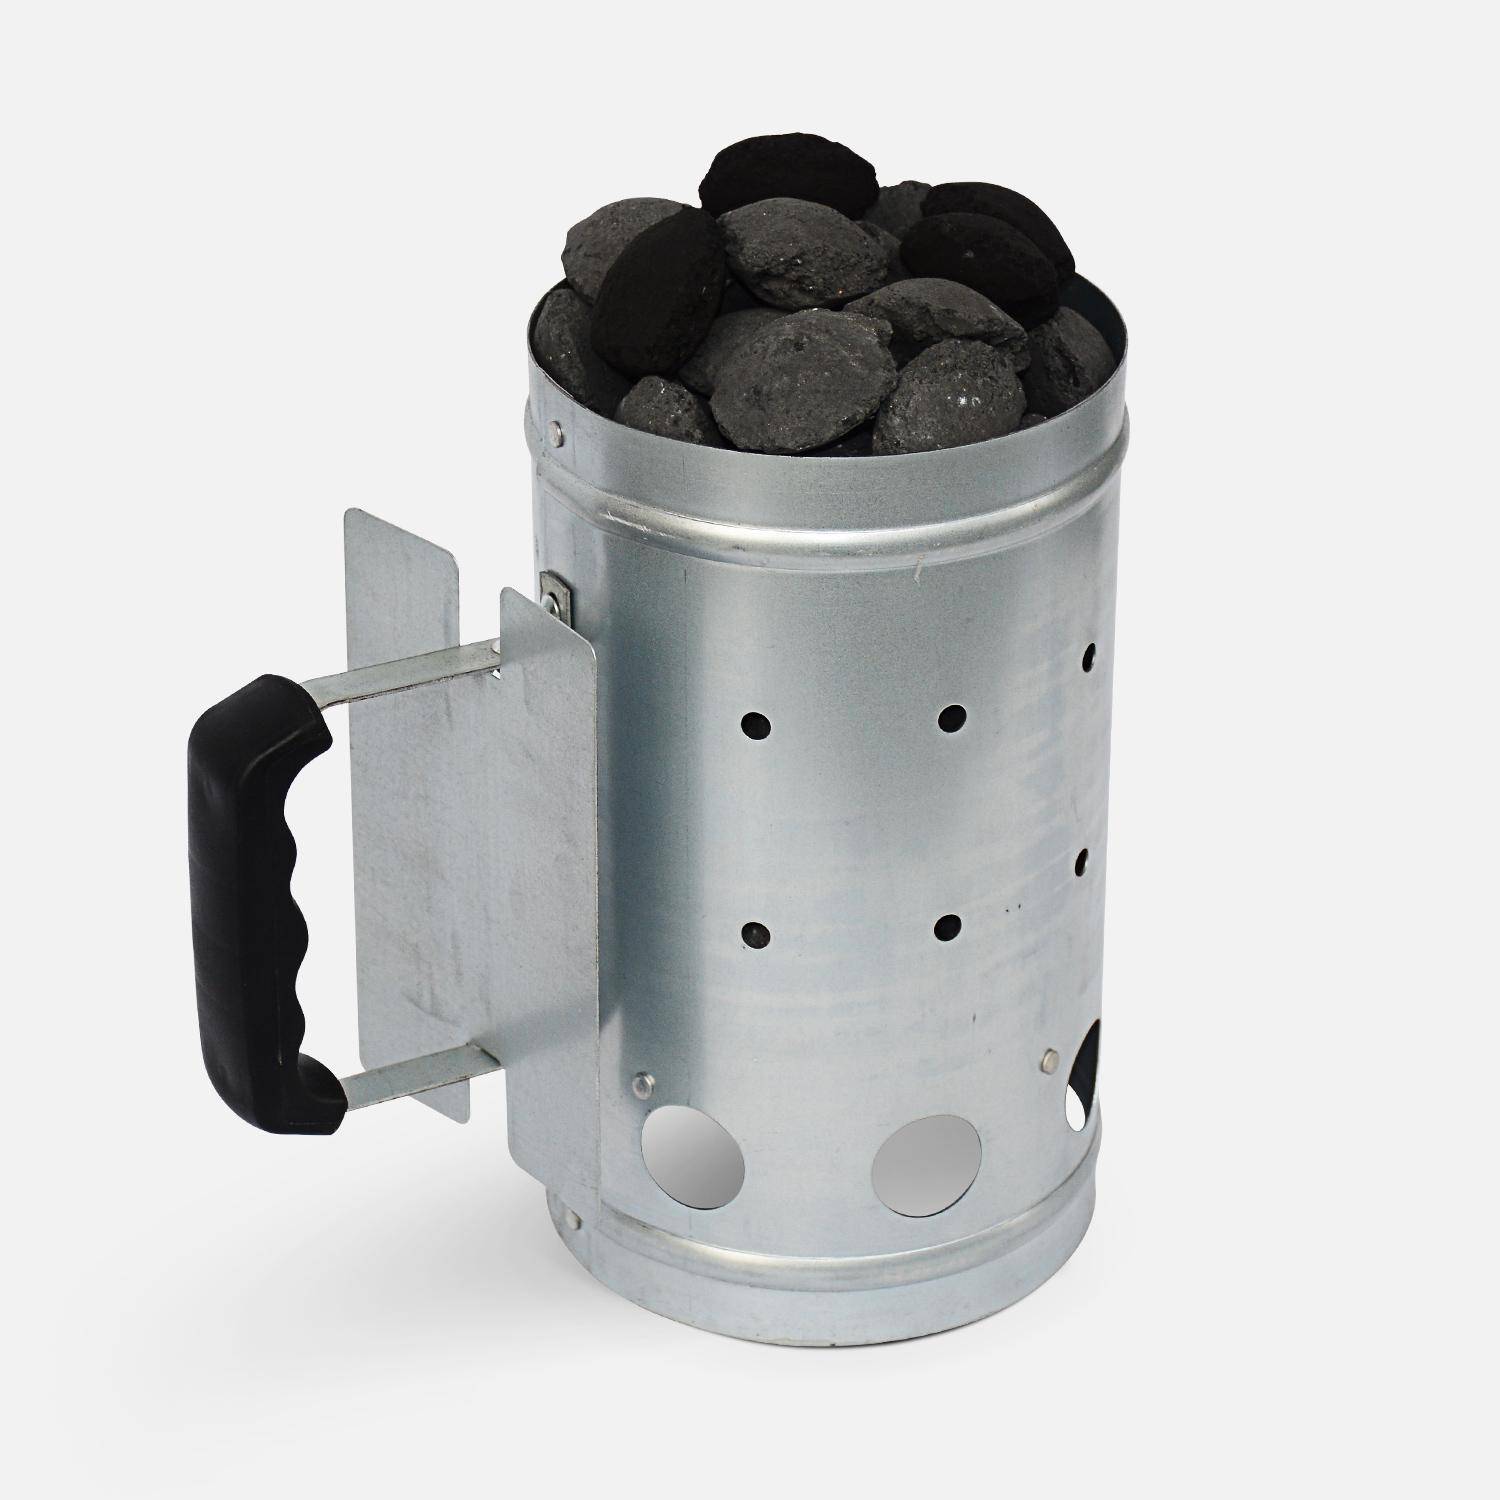 Brikettenstarter voor houtskool barbecue, van gegalvaniseerd staal - aluminium ,sweeek,Photo1